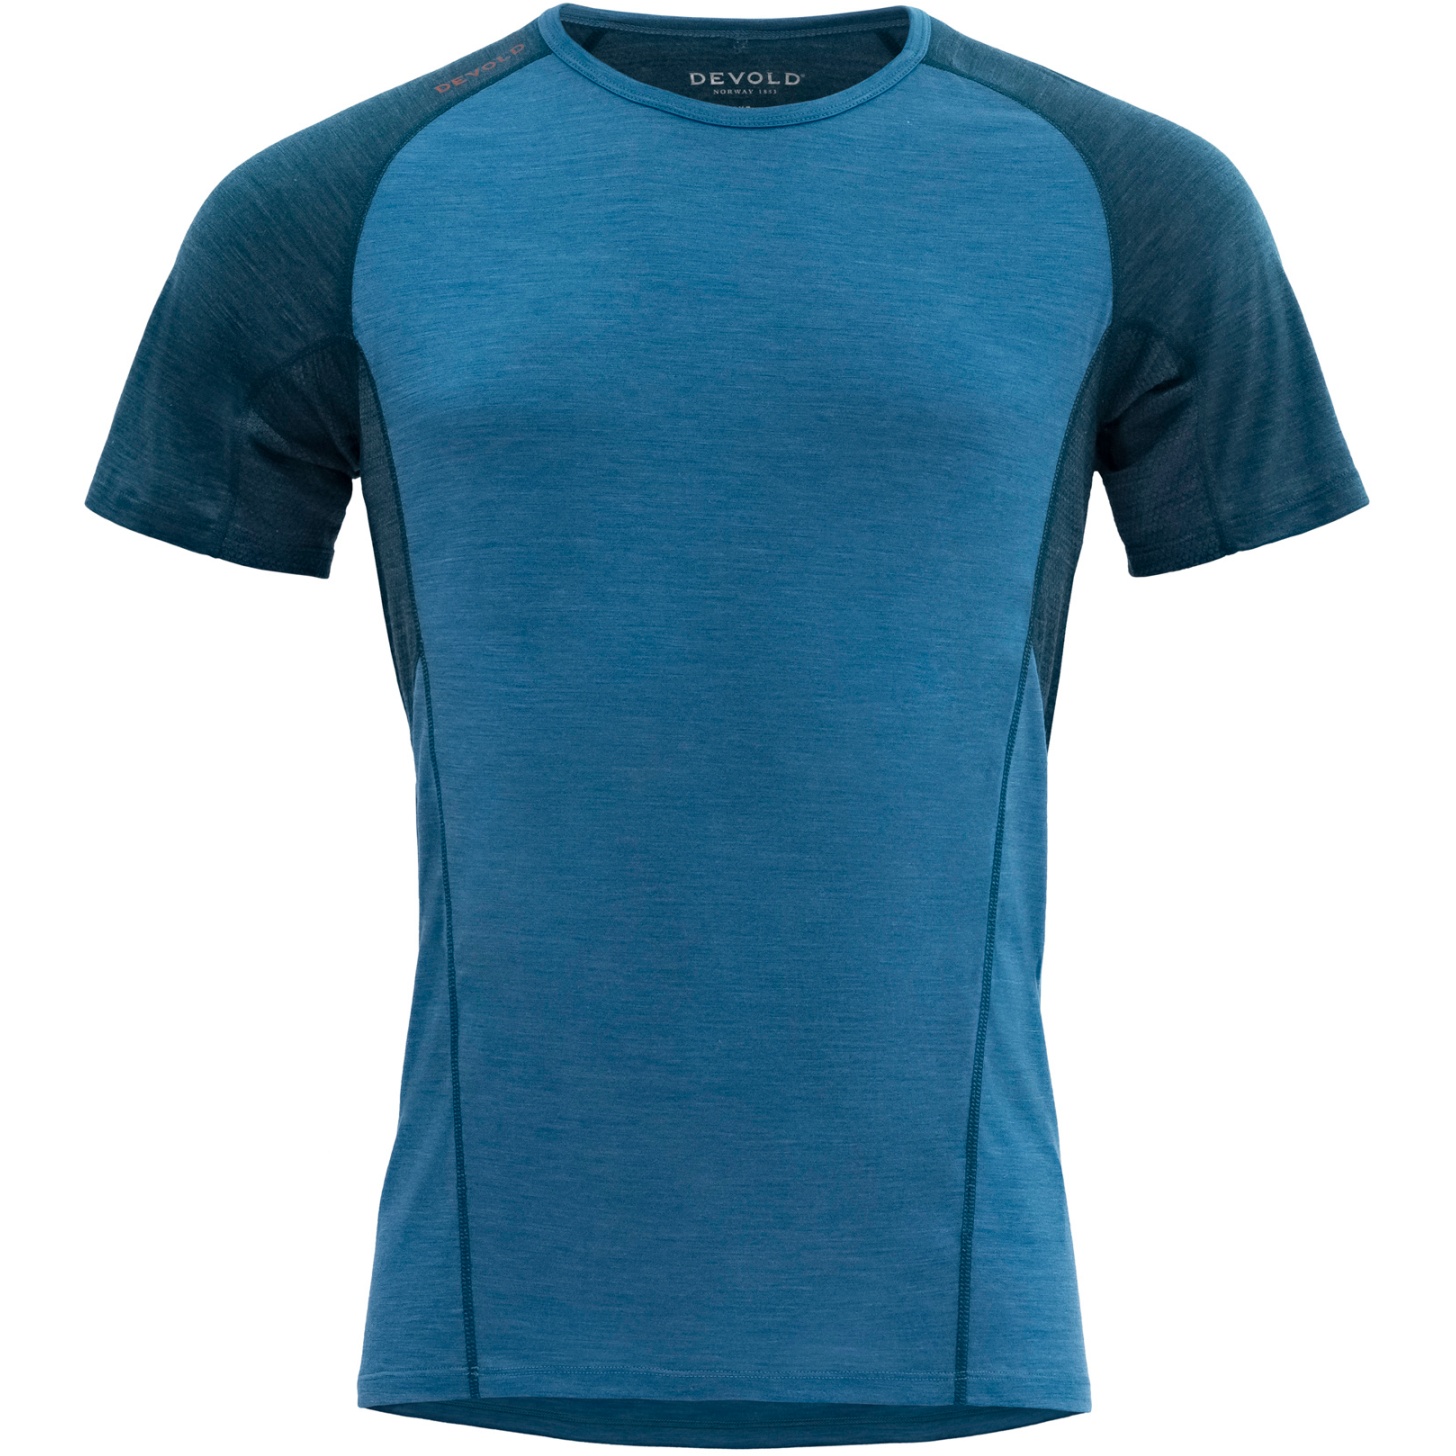 Produktbild von Devold Running Merino 130 T-Shirt Herren - 258 Blau